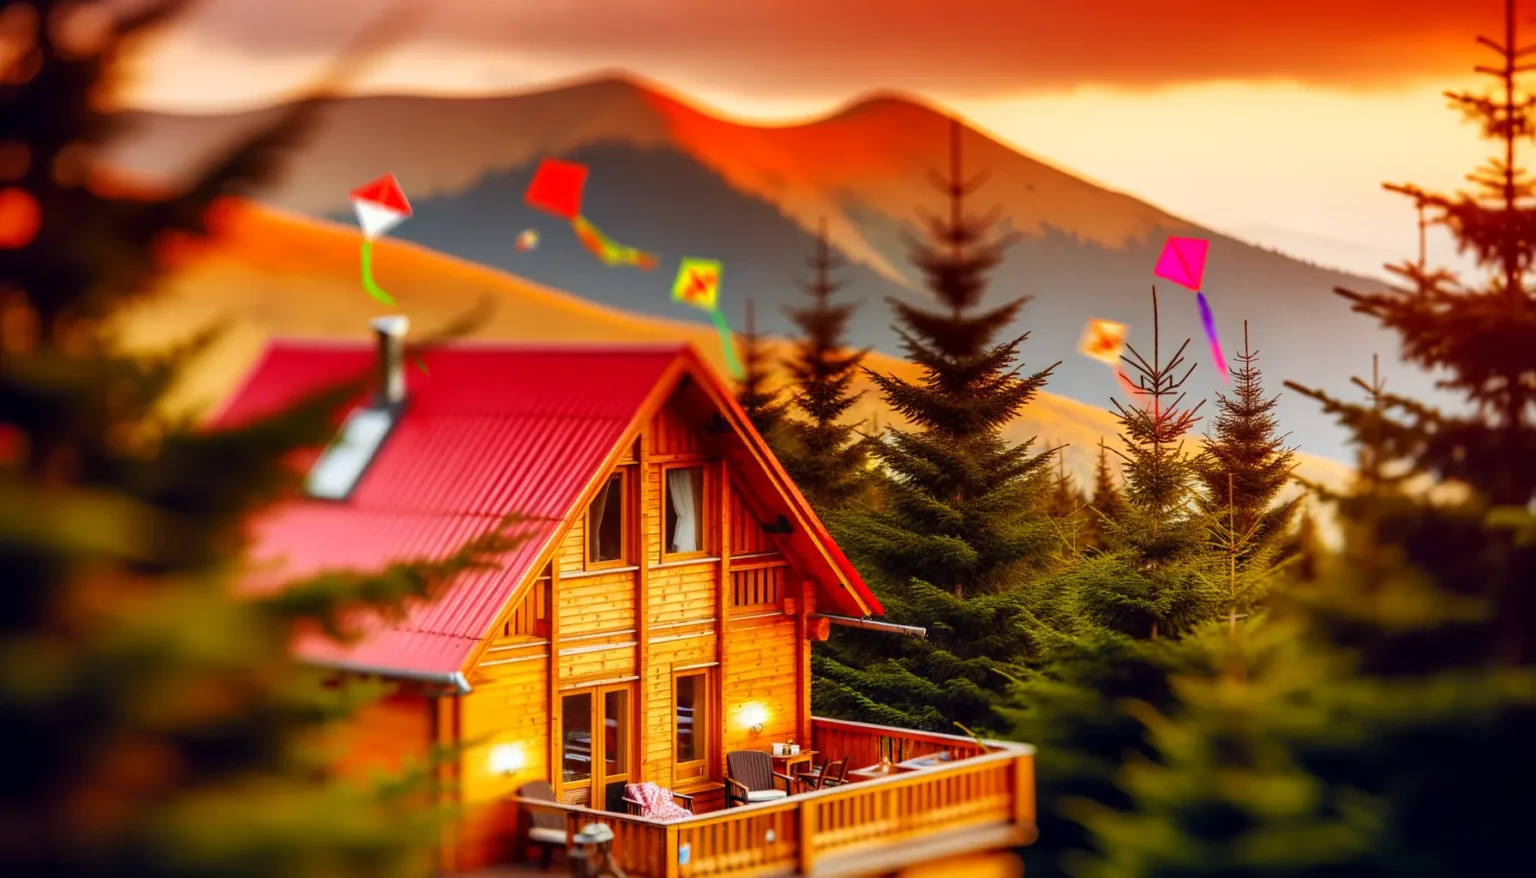 Ein gemütliches Holzhaus mit rotem Dach steht im Vordergrund, umgeben von hohen Tannen. Bunte Drachen fliegen im Hintergrund über eine malerische Berglandschaft unter einem orangefarbenen Himmel im Sonnenuntergang.